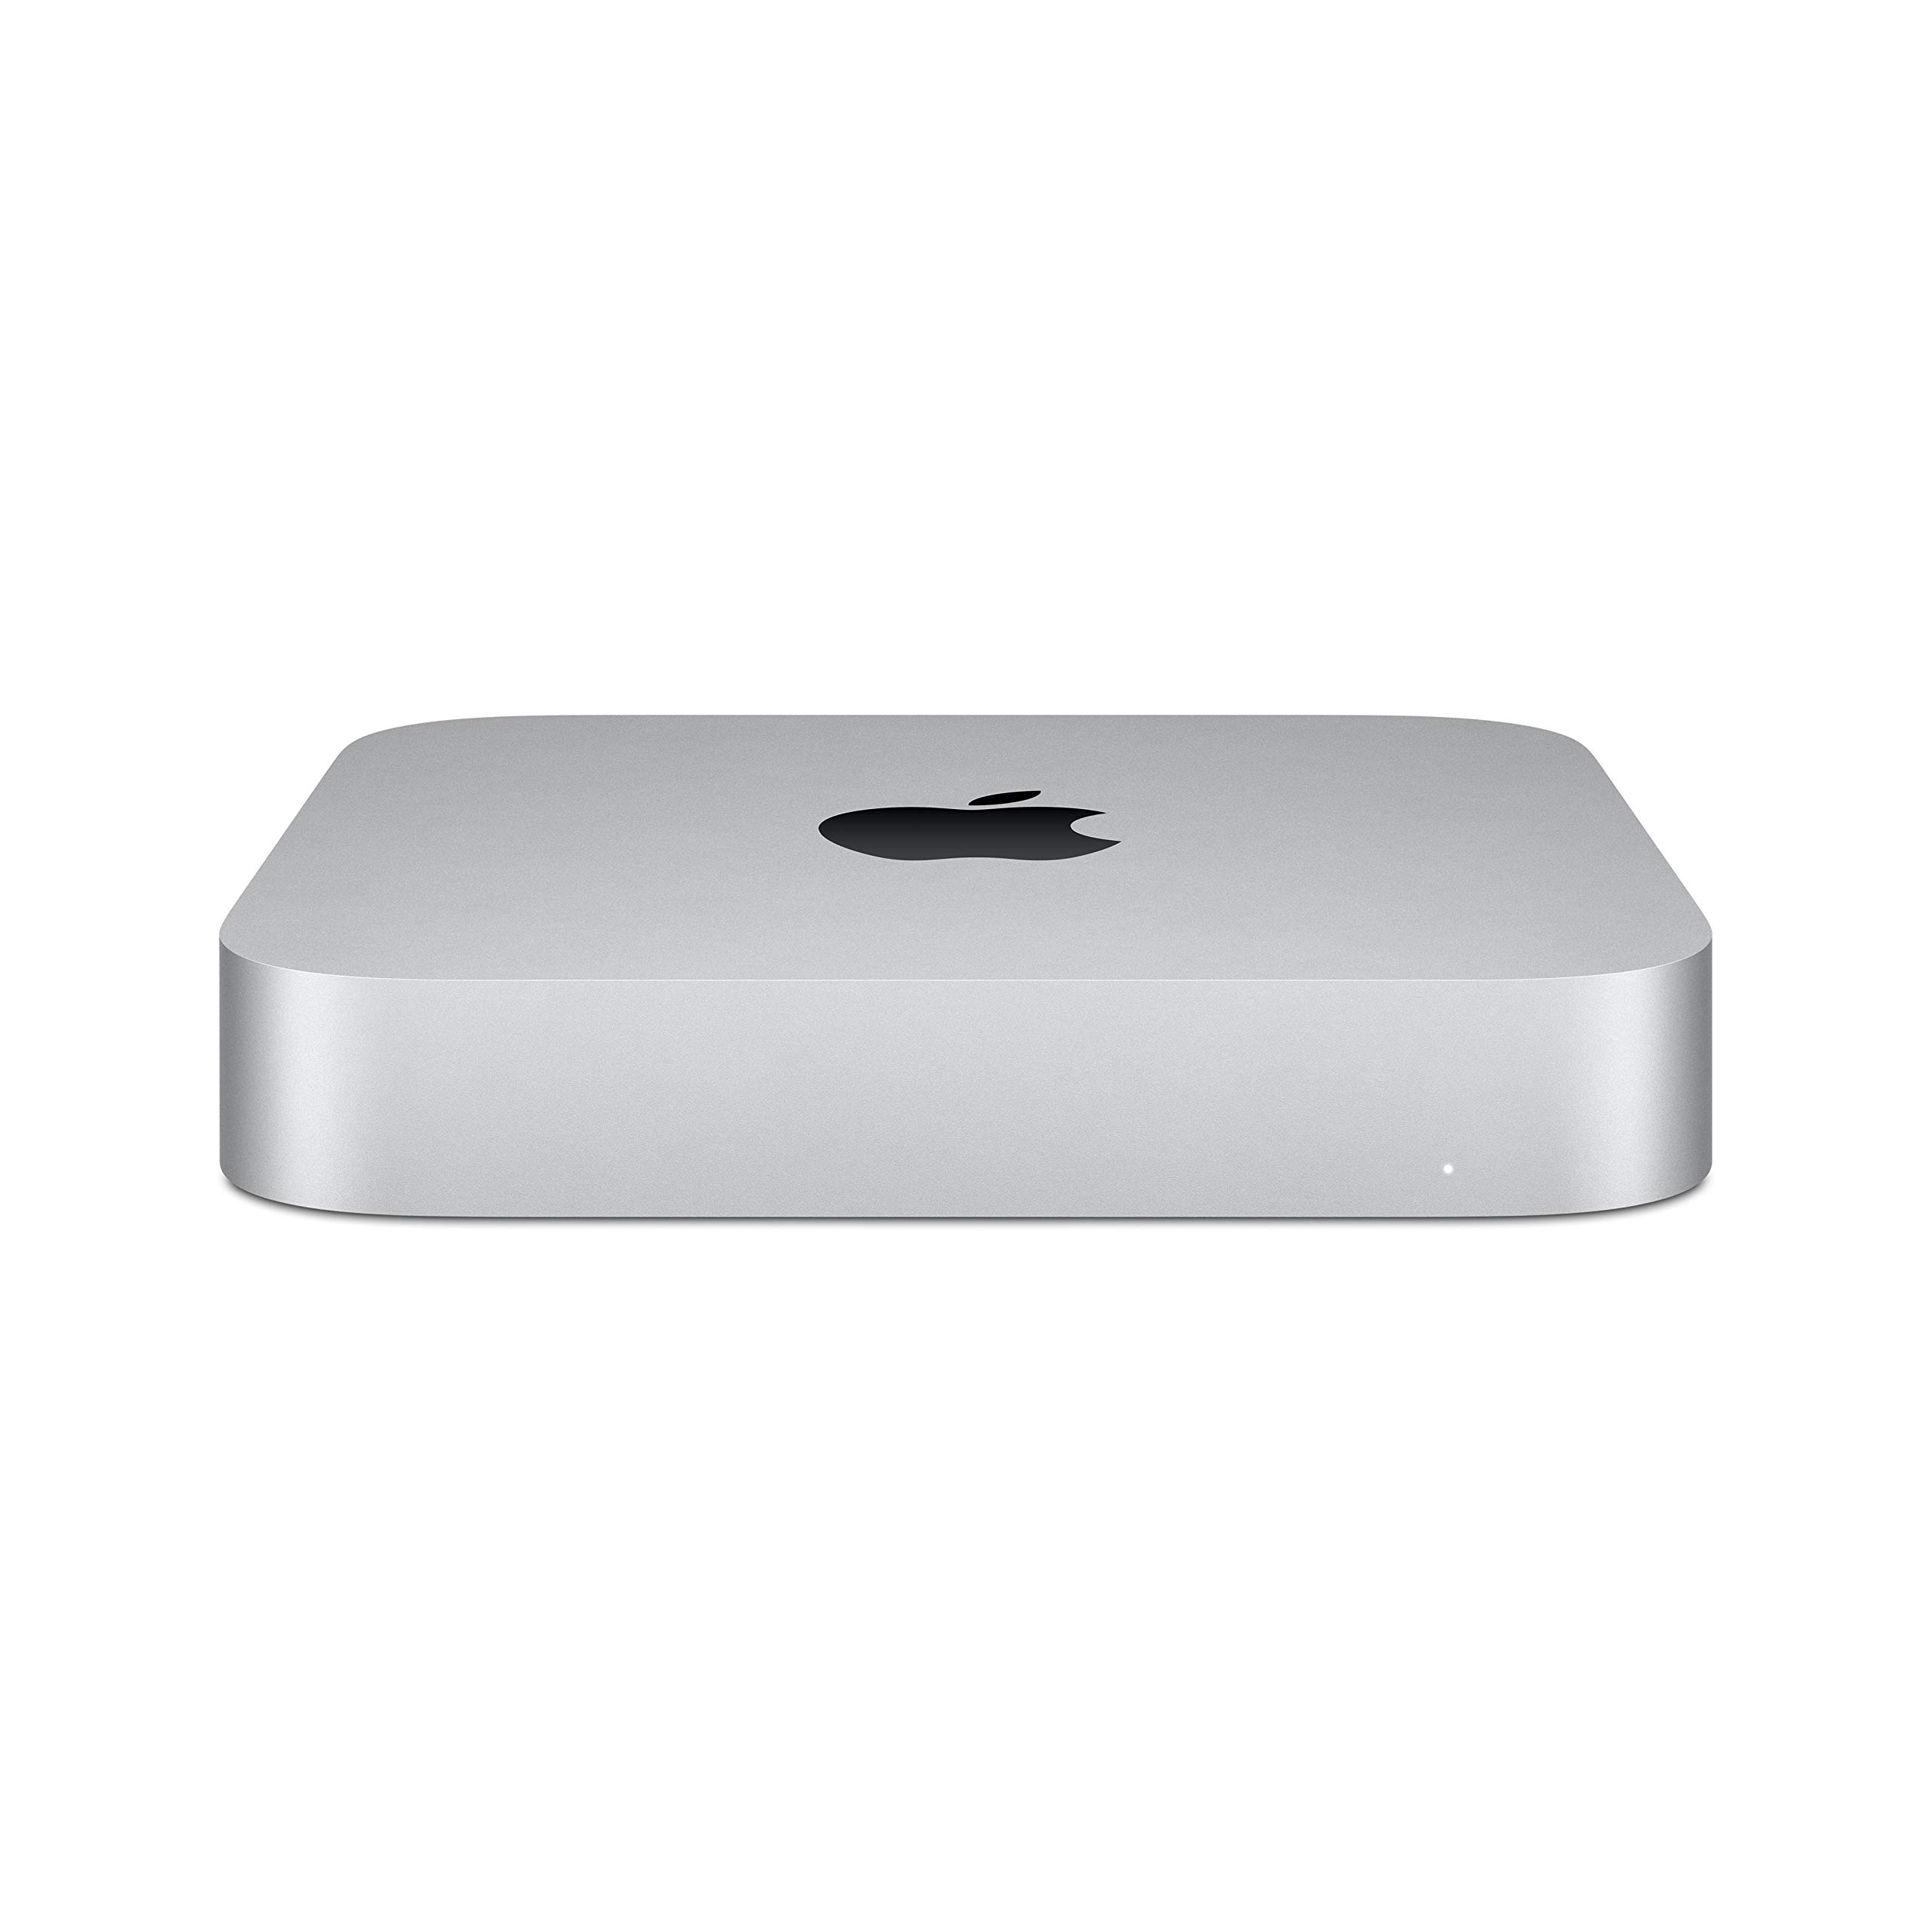 2020 Apple Mac Mini with Apple M1 Chip (8GB RAM, 256GB SSD Storage) $569.99